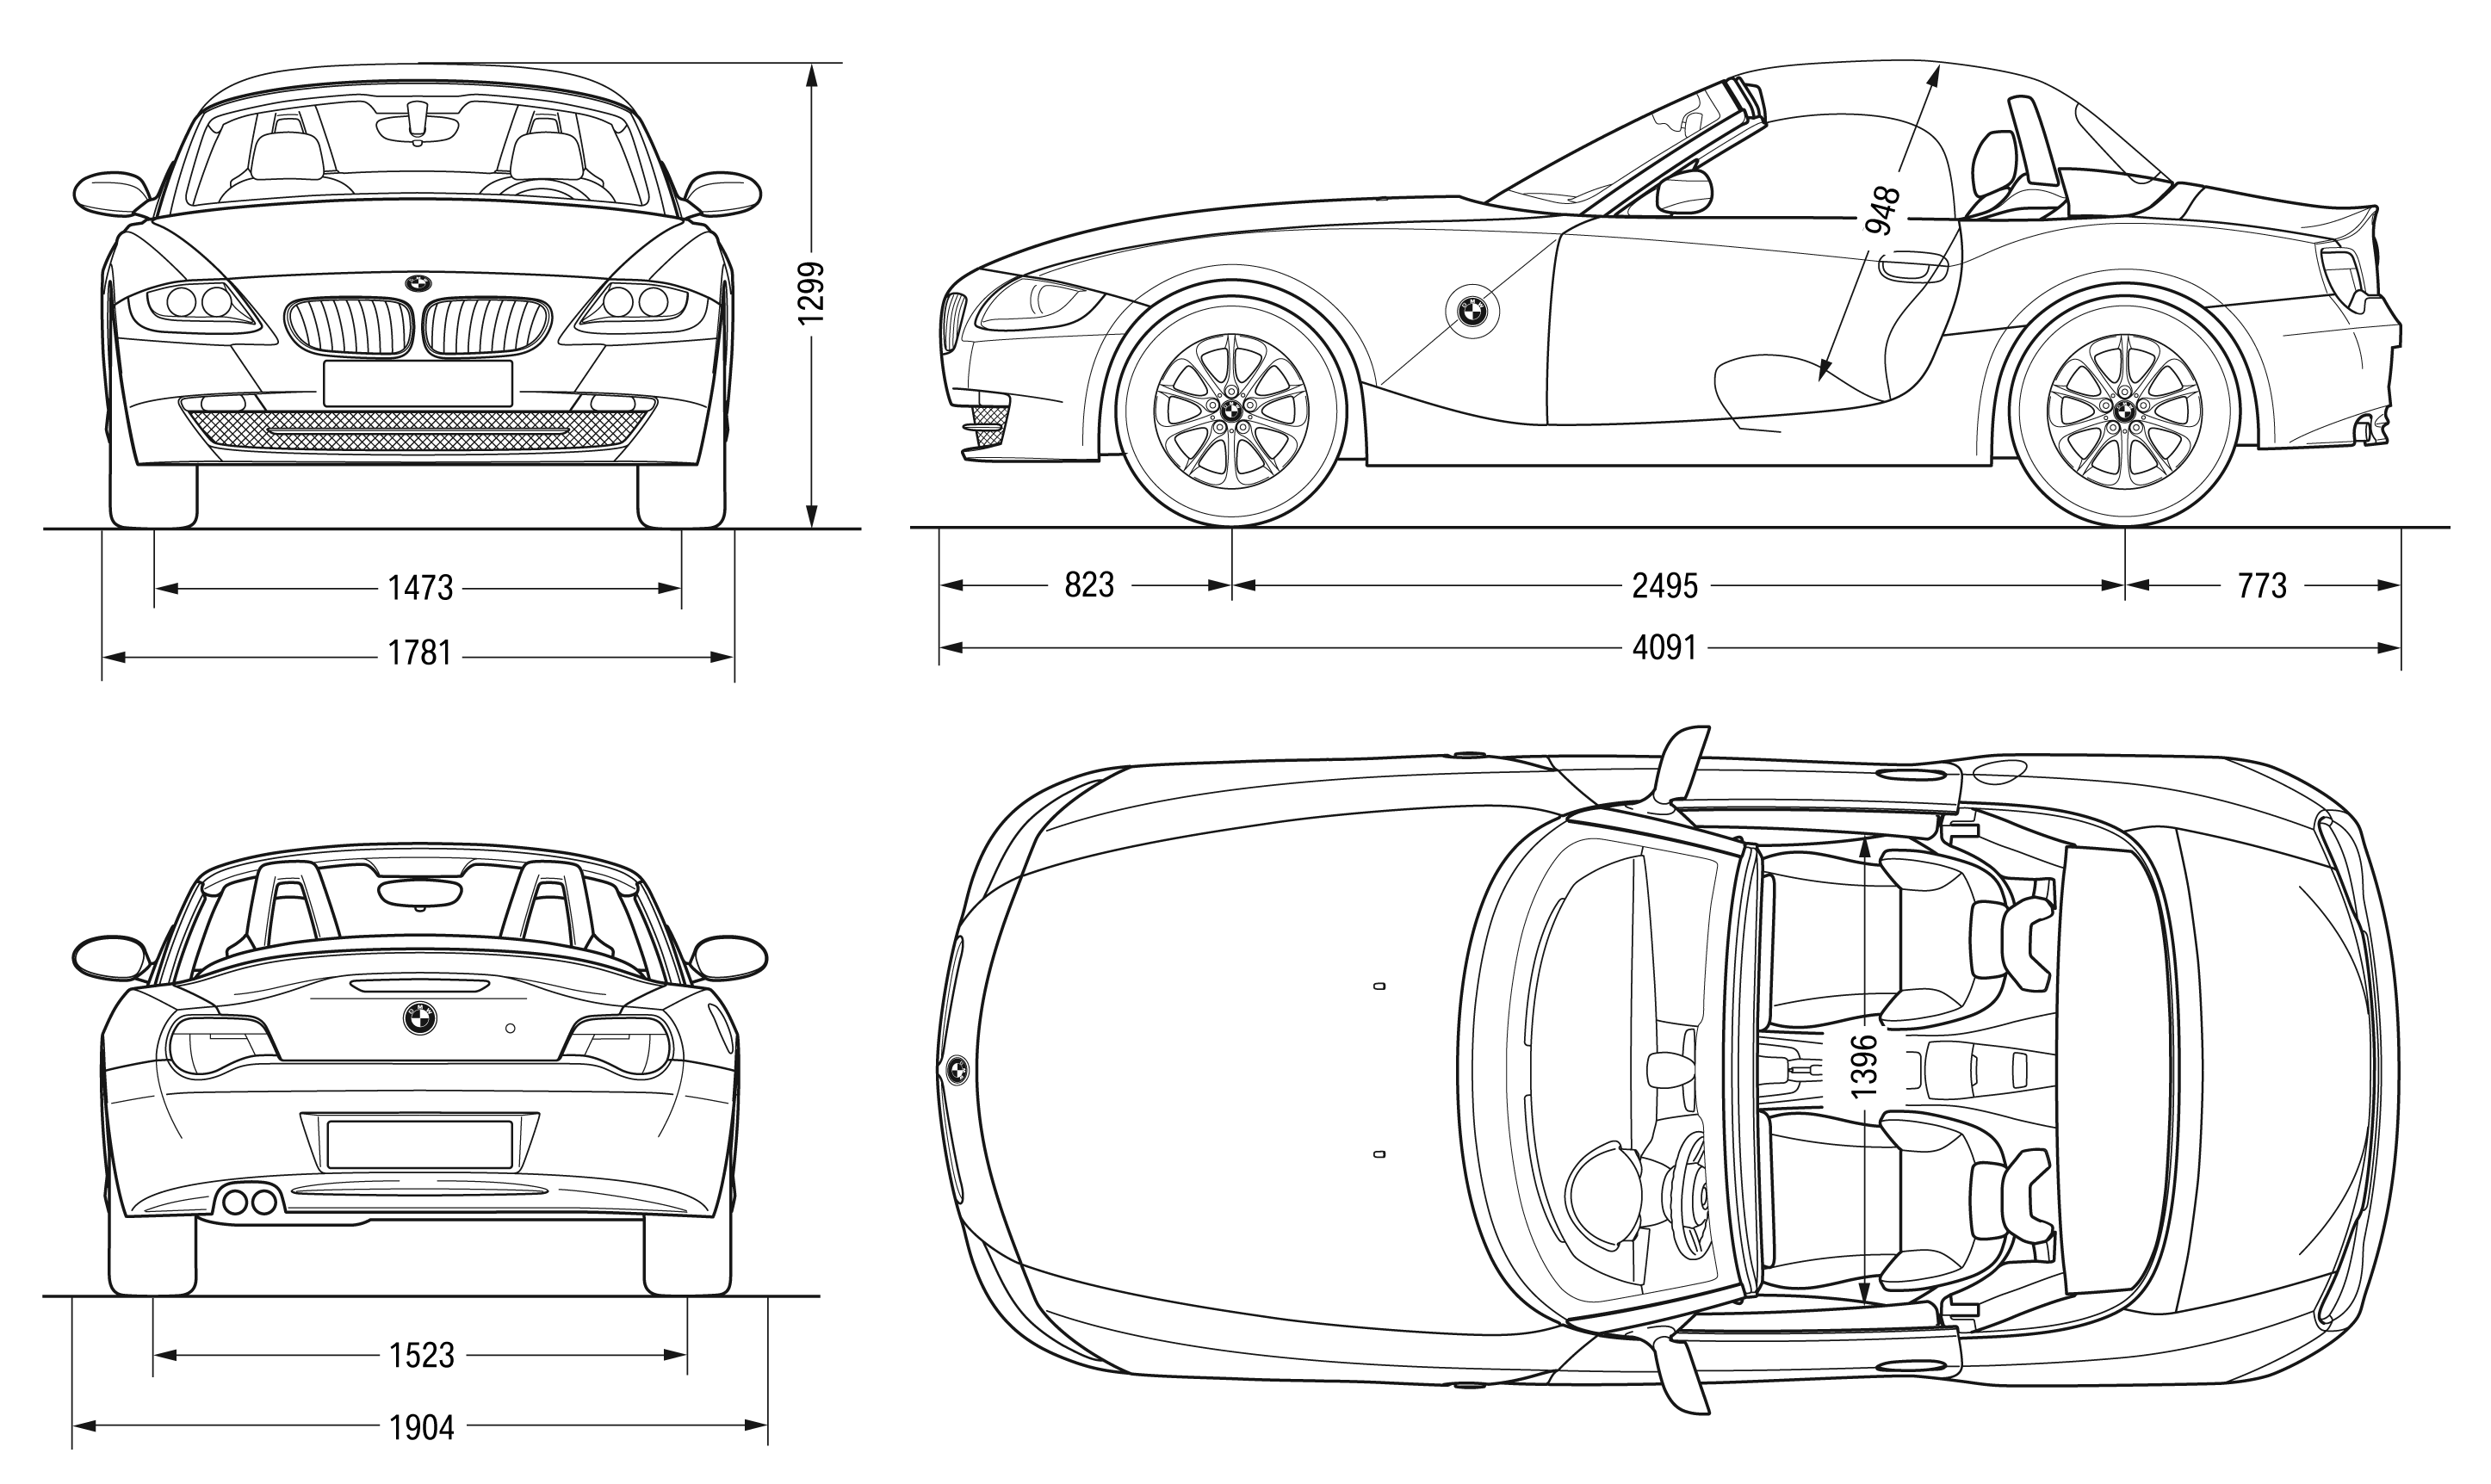 2007 BMW Z4 E85 Roadster Cabriolet v2 blueprints free - Outlines